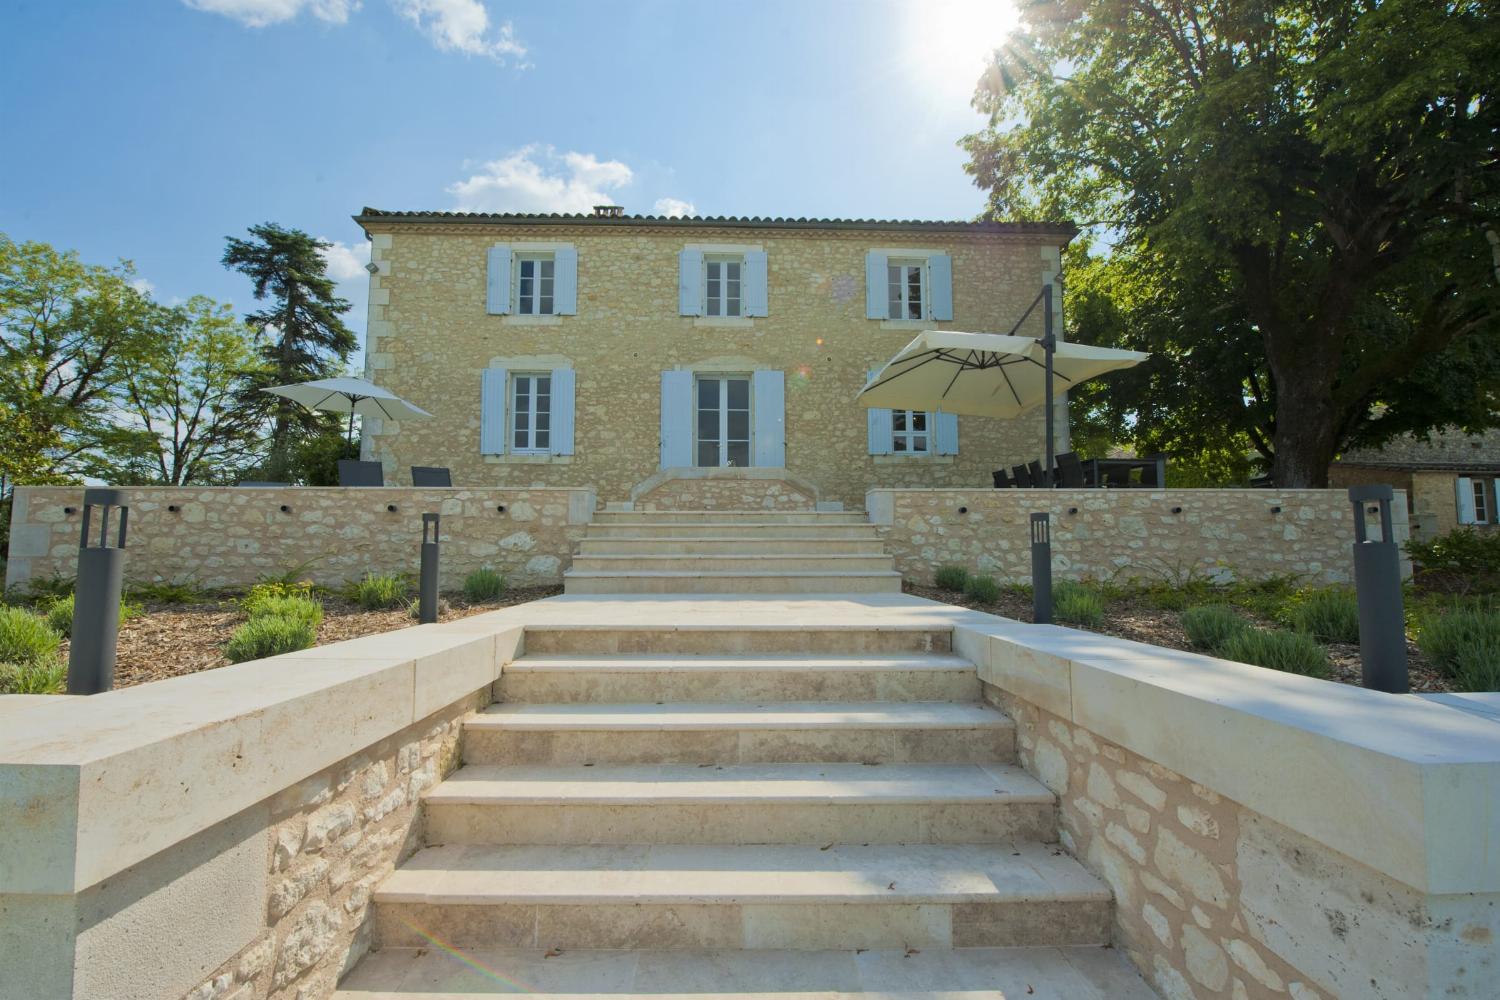 Rental home in Dordogne